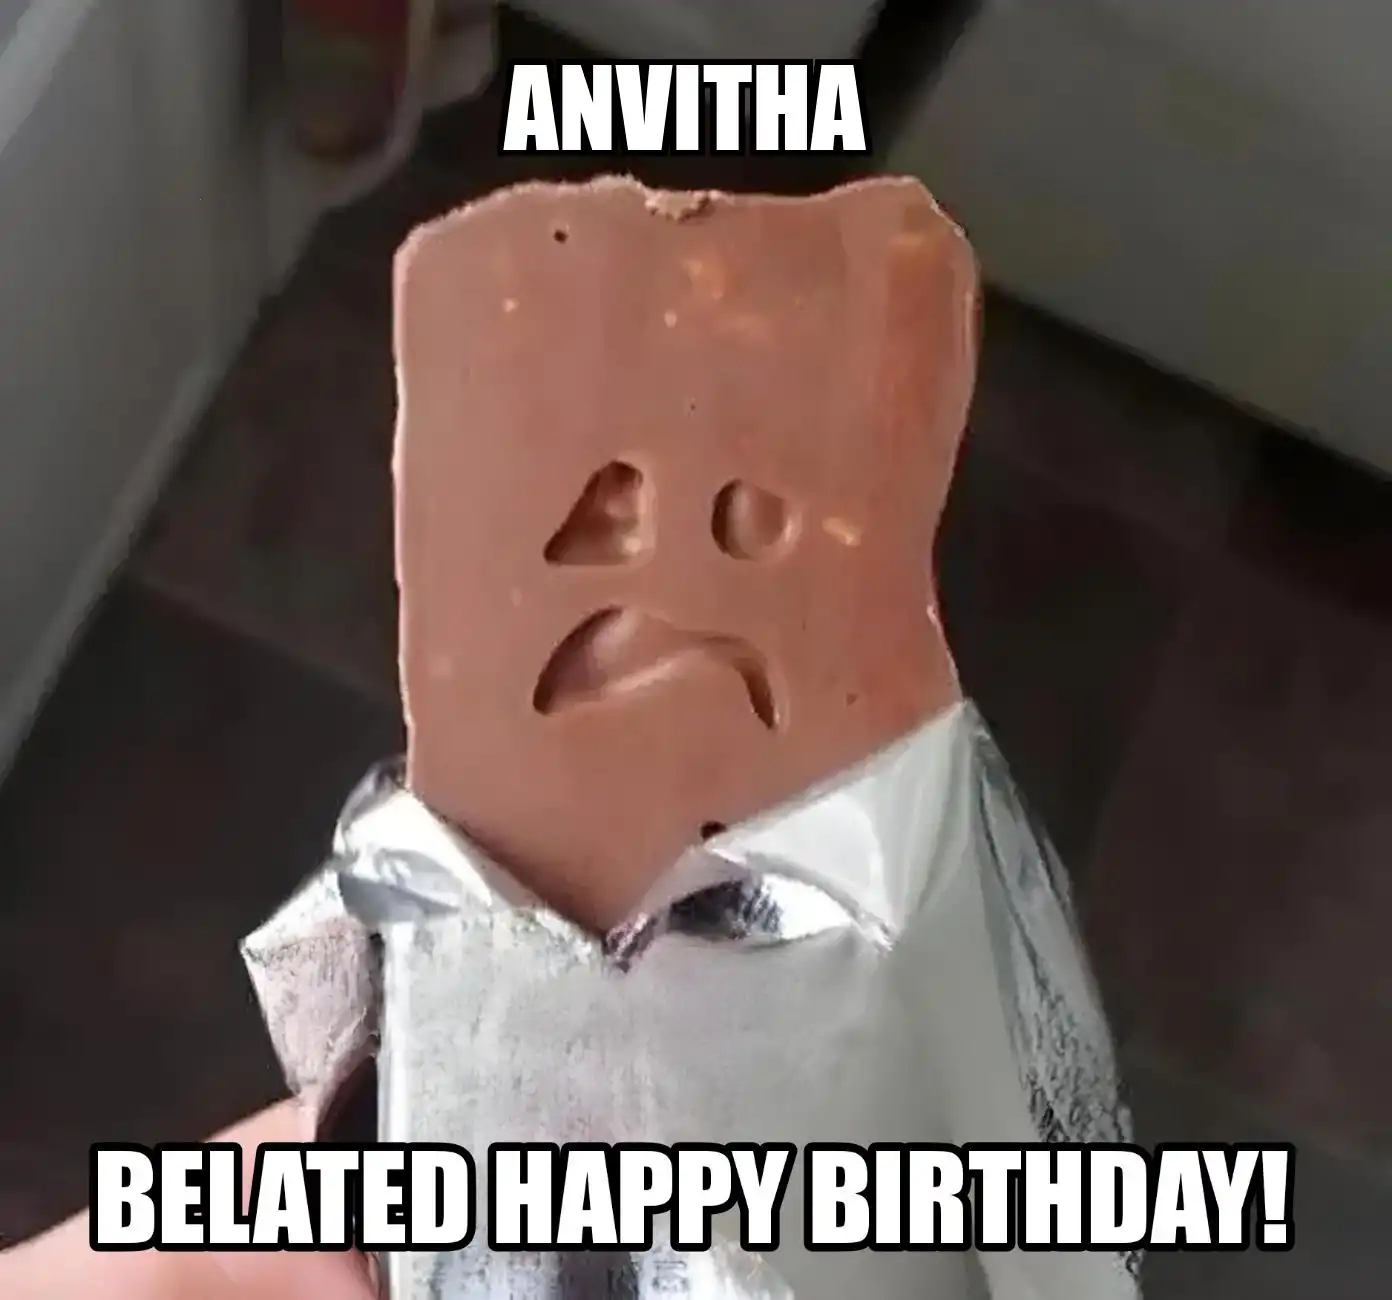 Happy Birthday Anvitha Belated Happy Birthday Meme